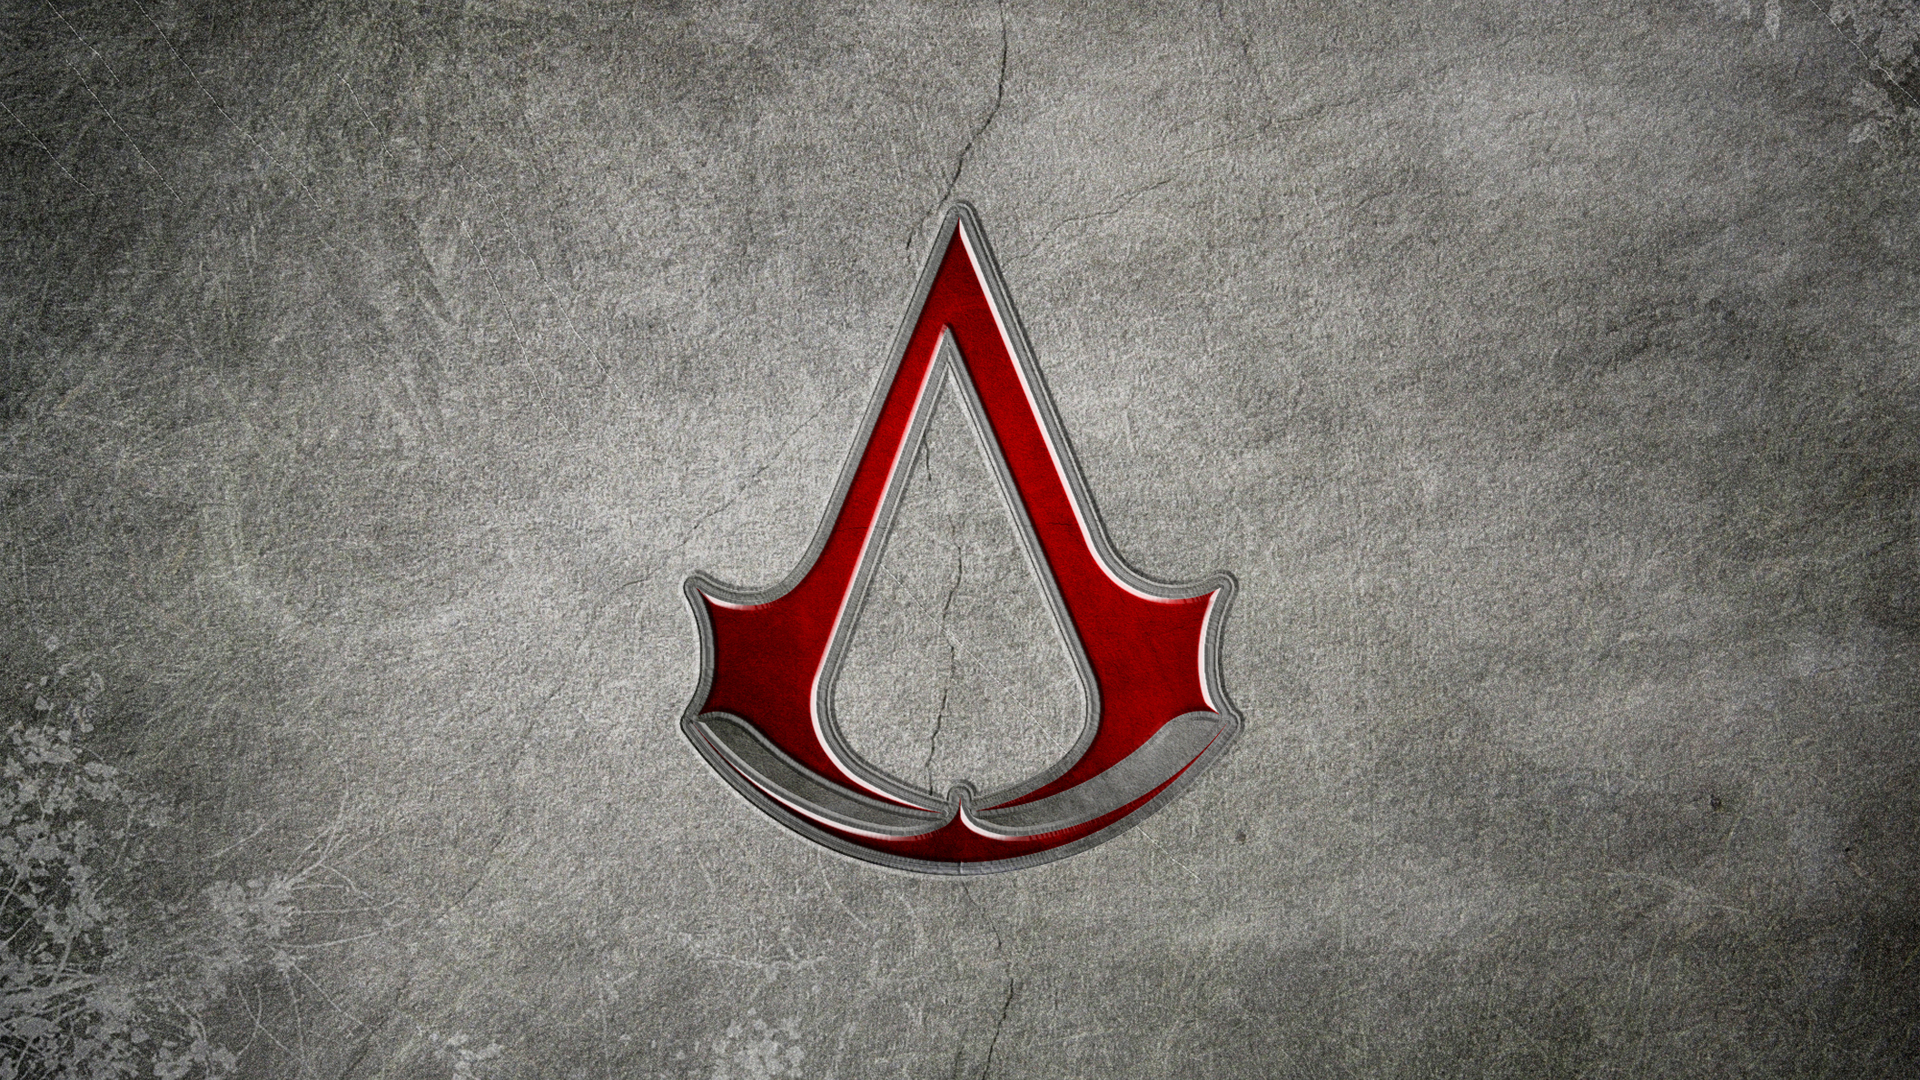 Assassins Creed Emblem wallpaper   691069